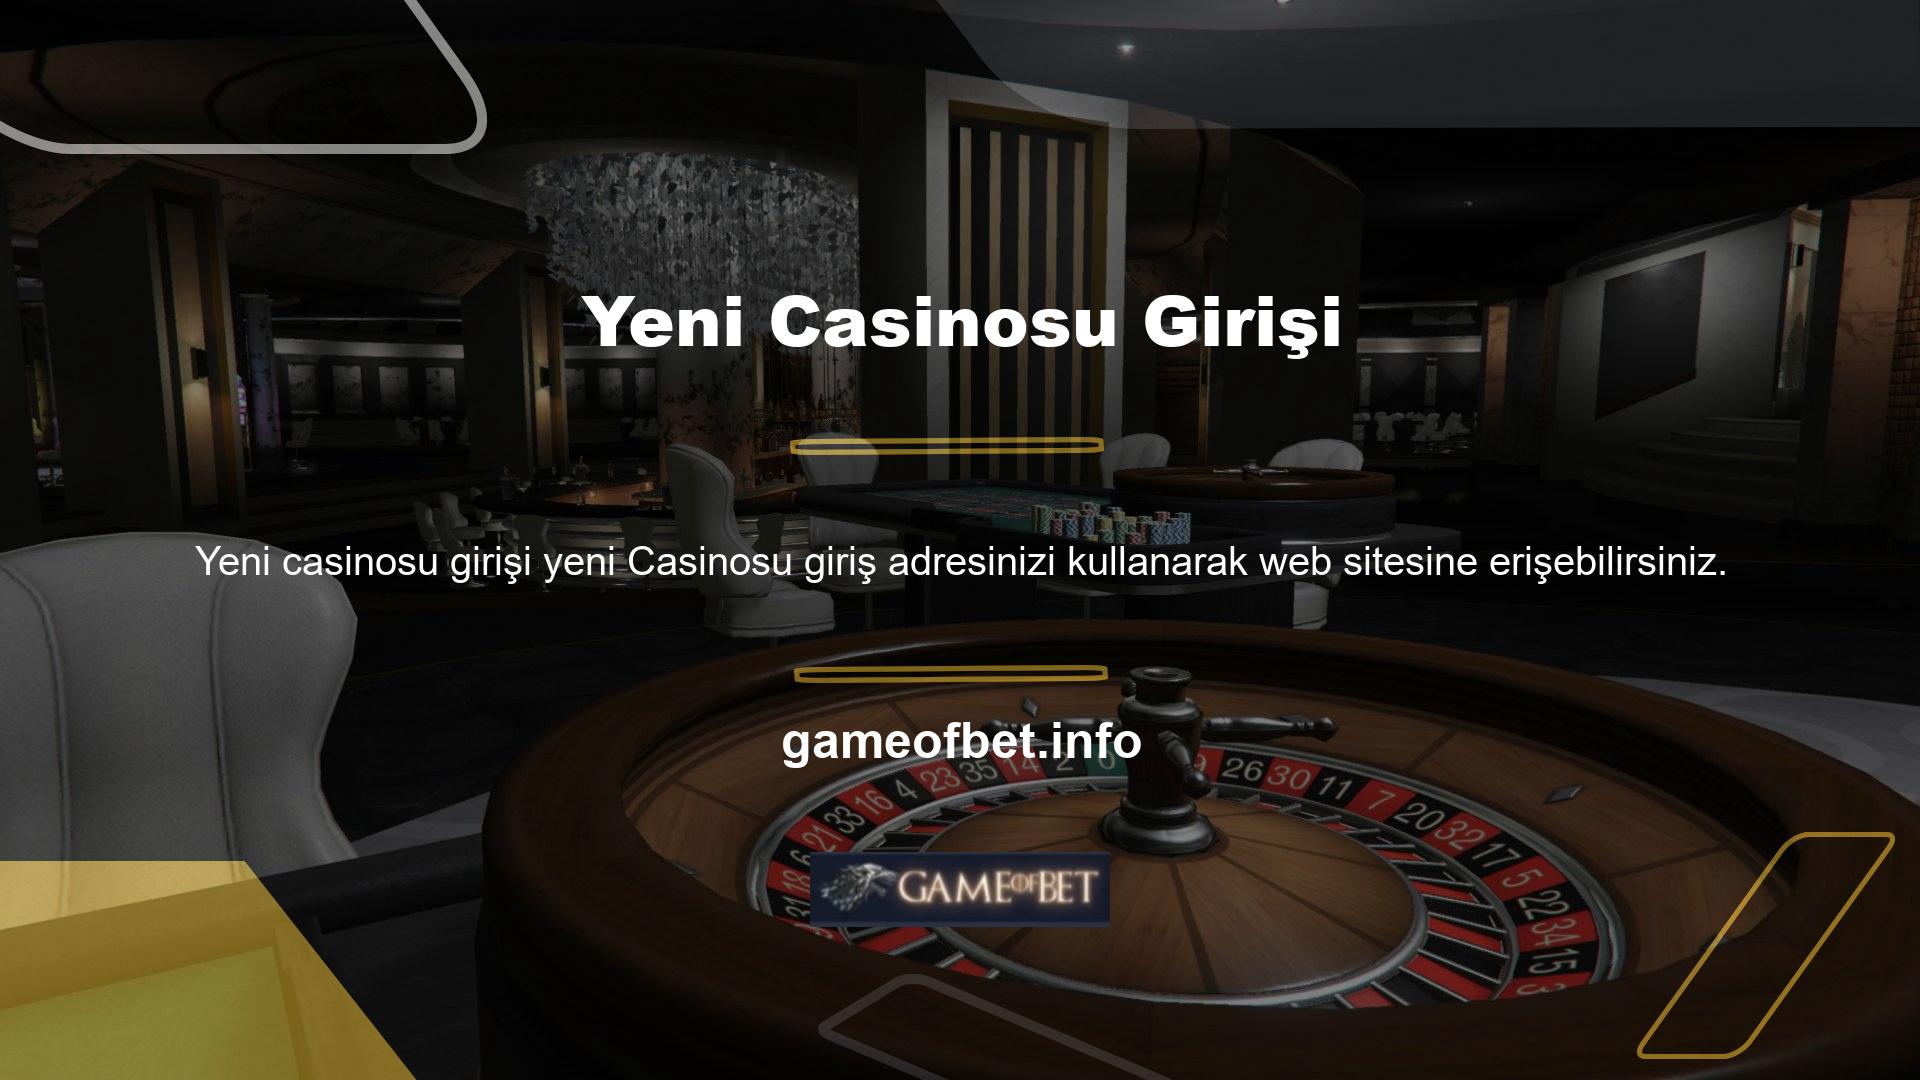 Gameofbet ile giriş yaparak sitedeki birçok casino oyununa katılabilirsiniz